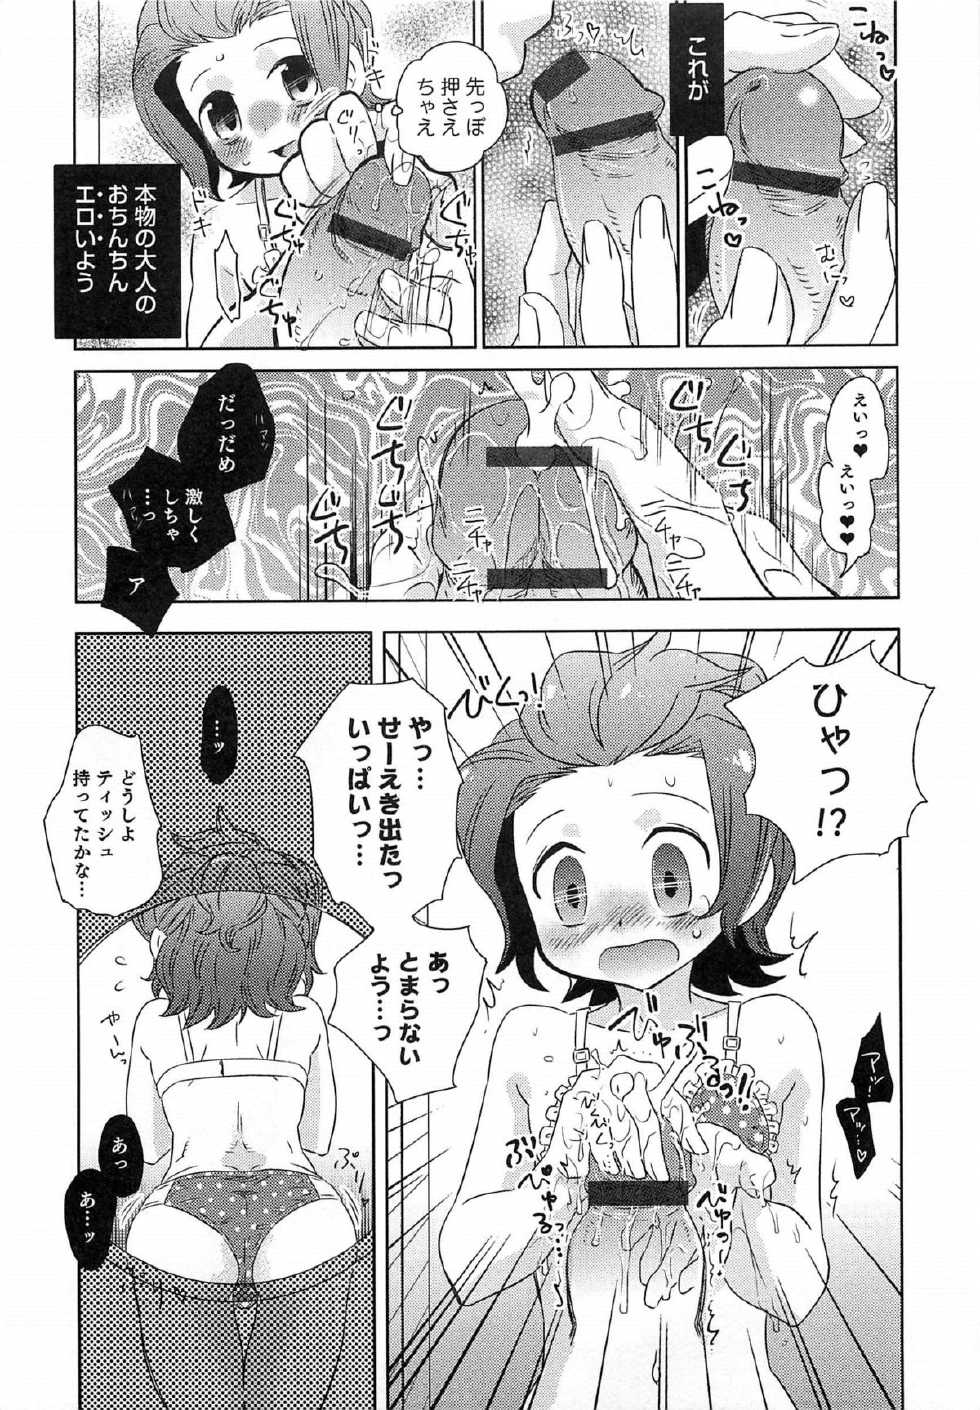 [Anthology] Otokonoko HEAVEN Vol.14 Josou Shitagi no Otokonoko - Page 38